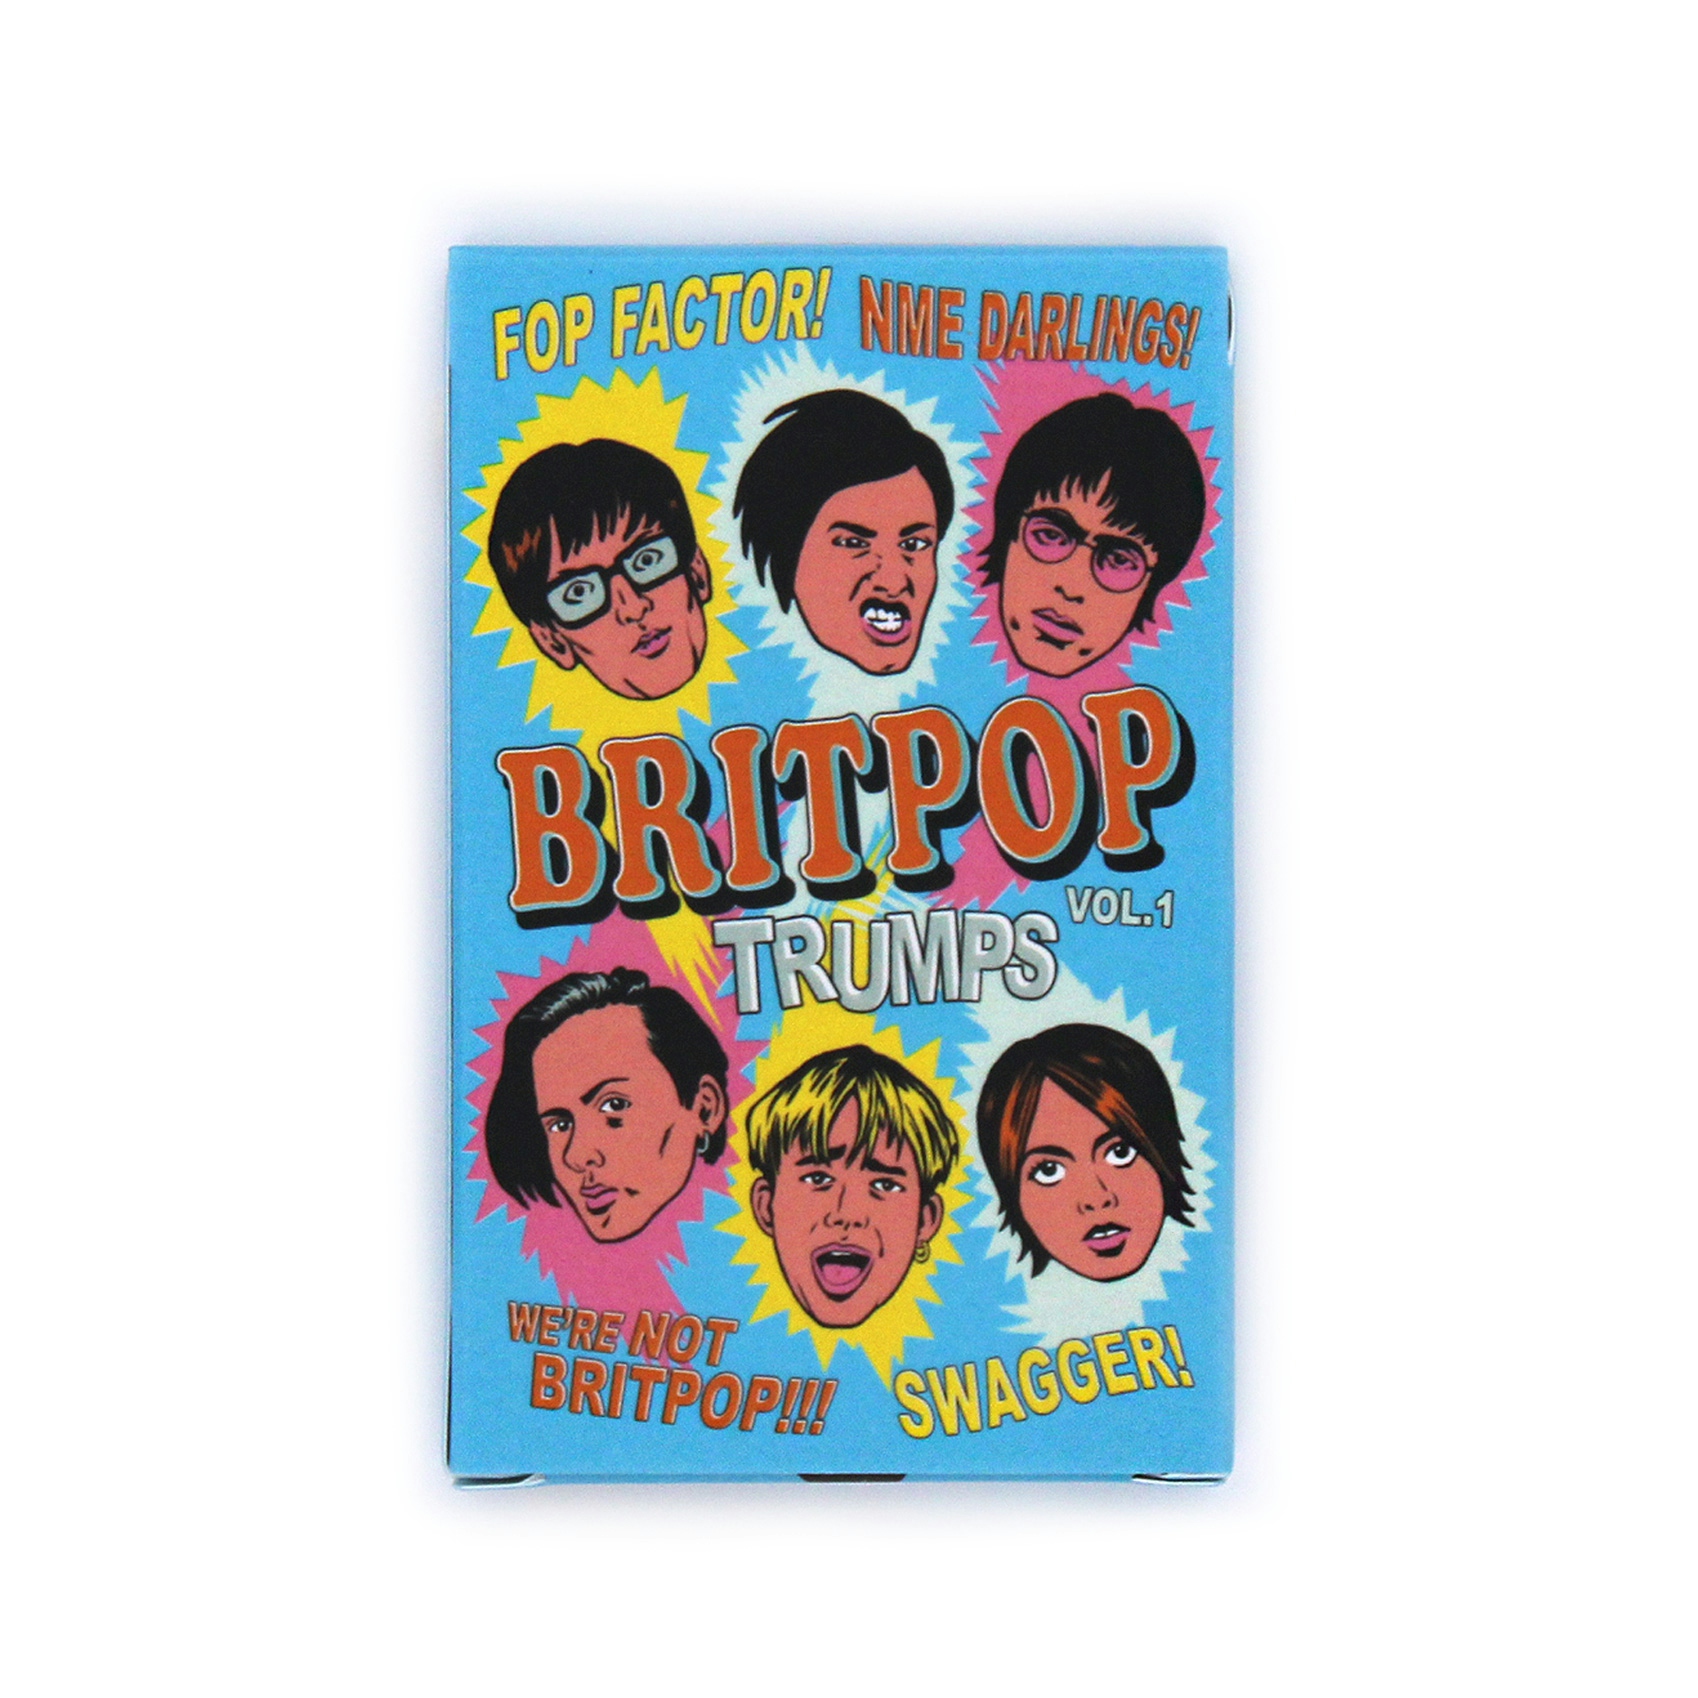 Album artwork for Brit Pop 1 by Top Trumps